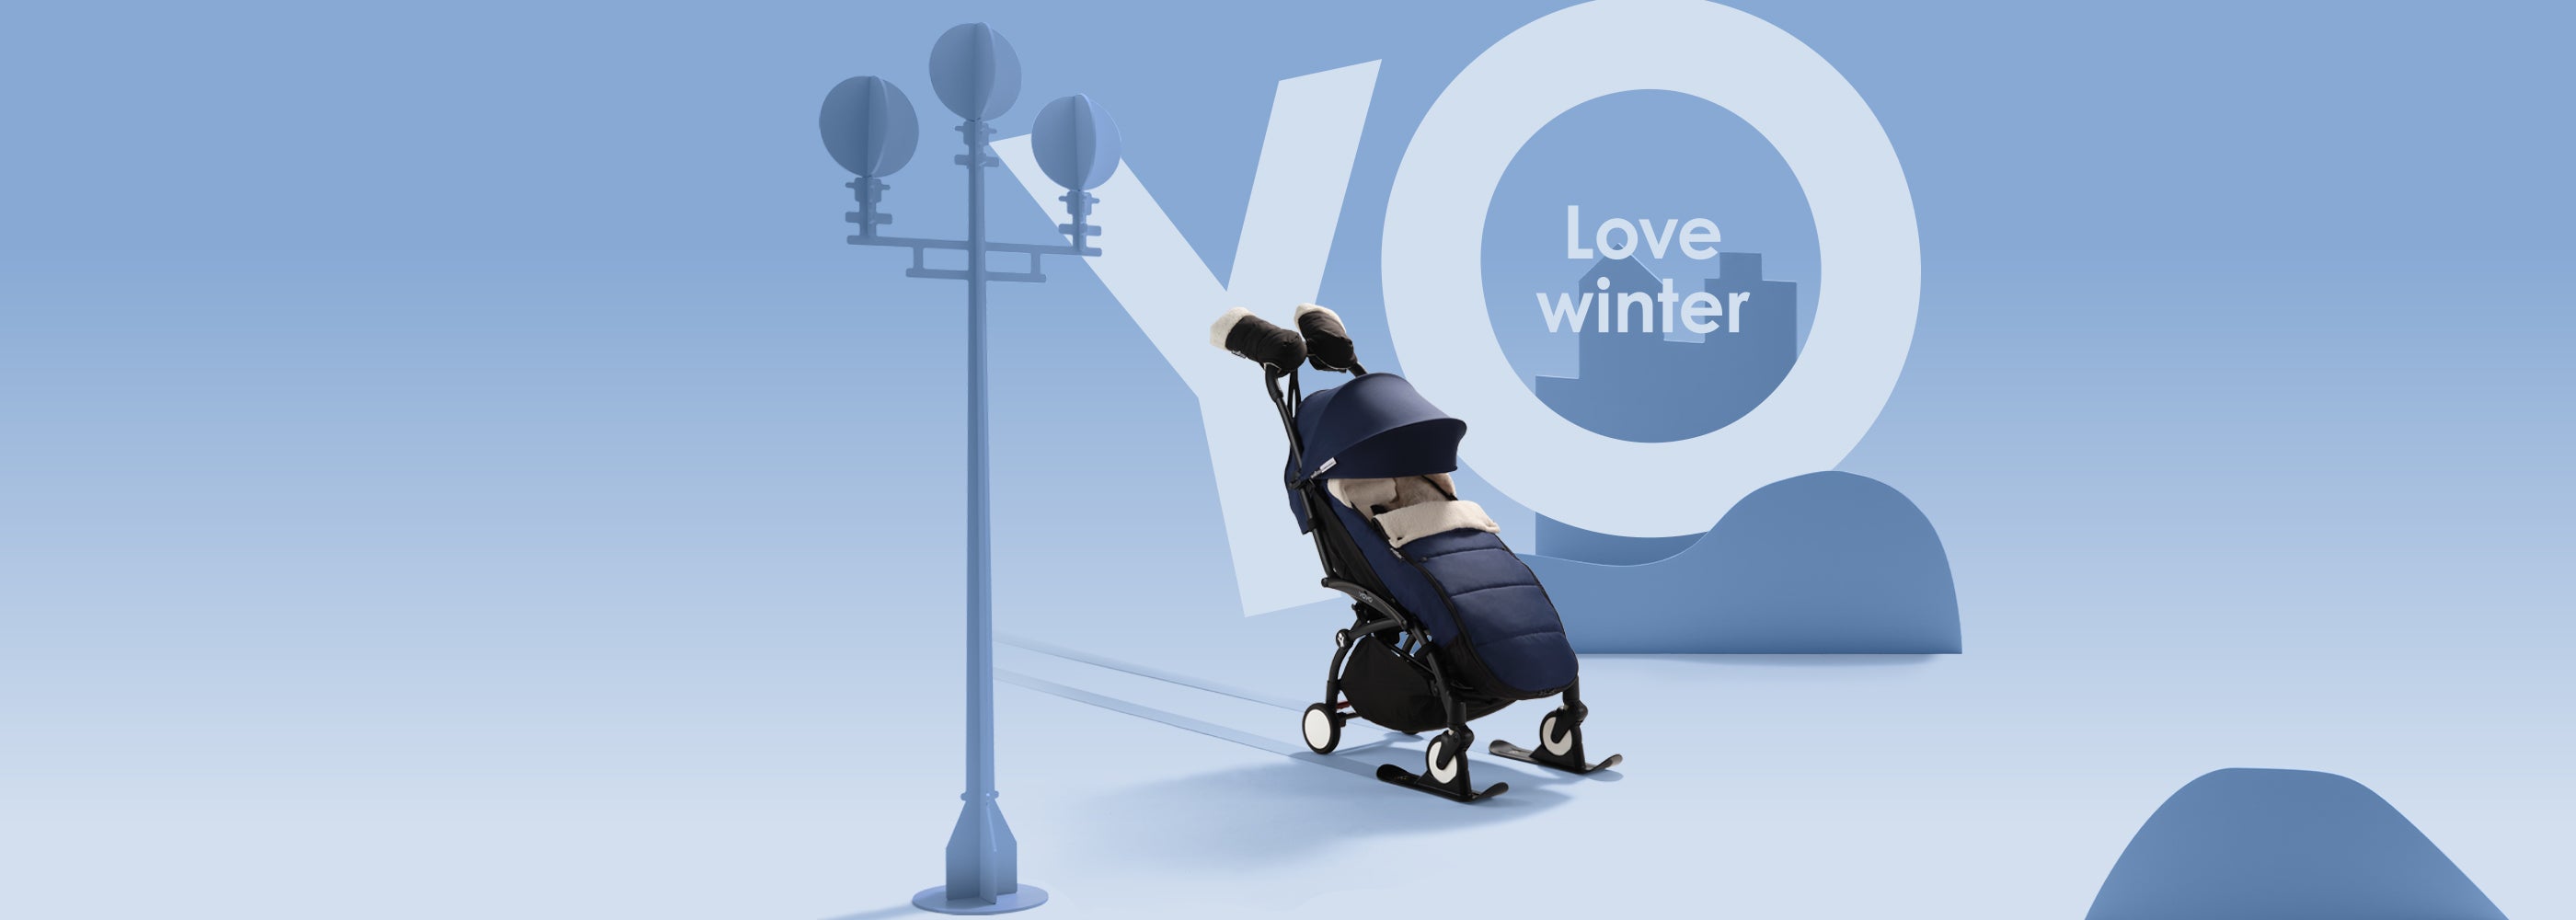 Babyzen YOYO² Complete Stroller Bundle - Little Folks NYC